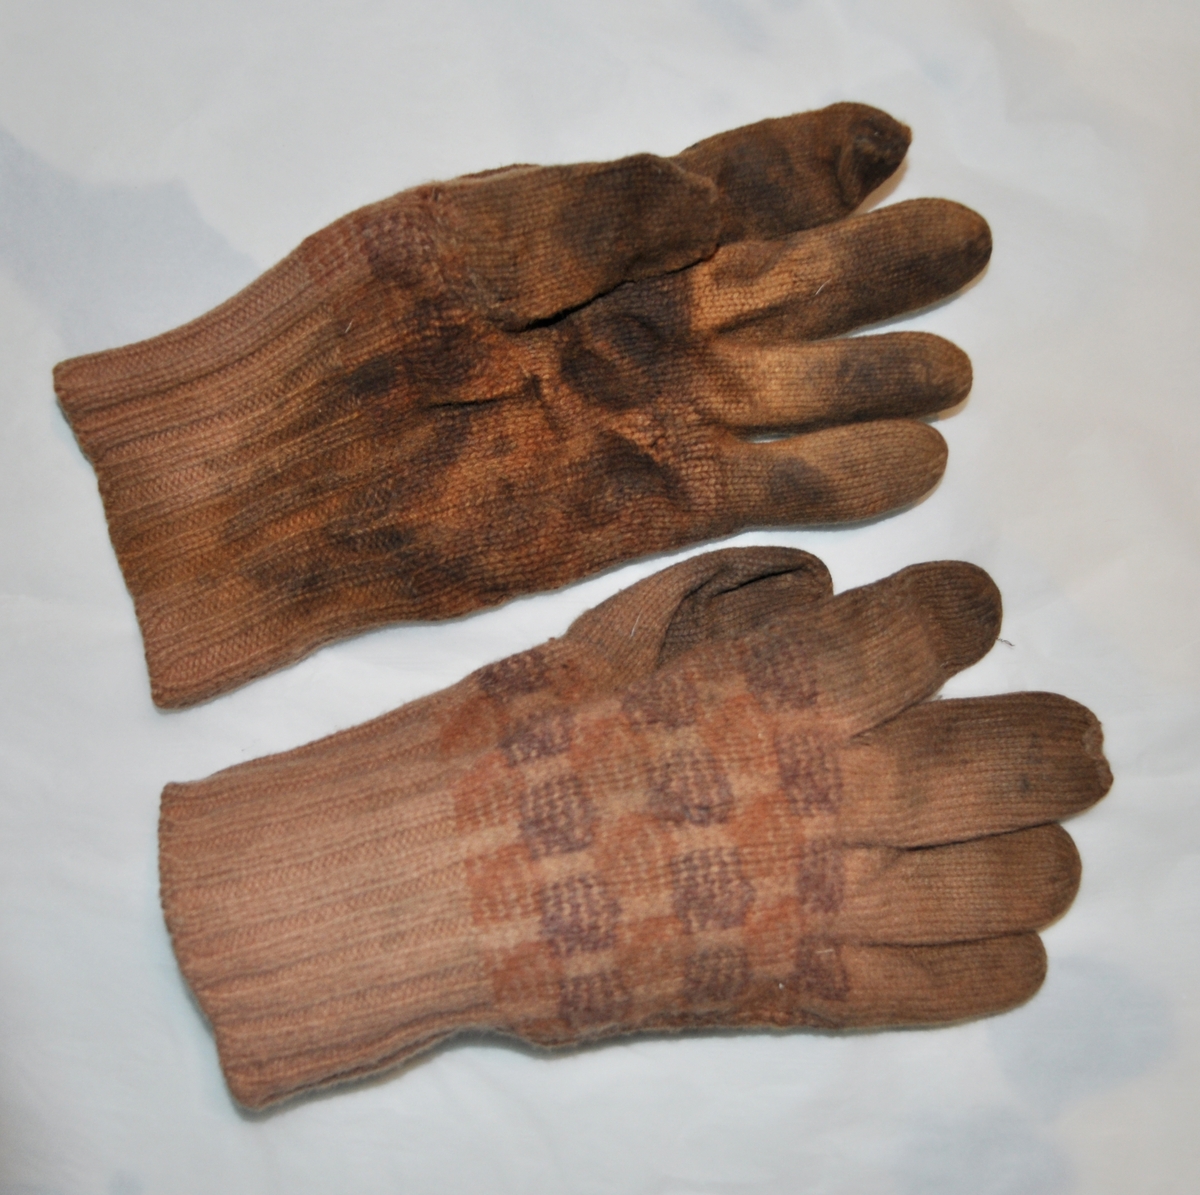 Ett par stickade fingervantar med rutor på handloven i svart. Orangbrun färg i övrigt.